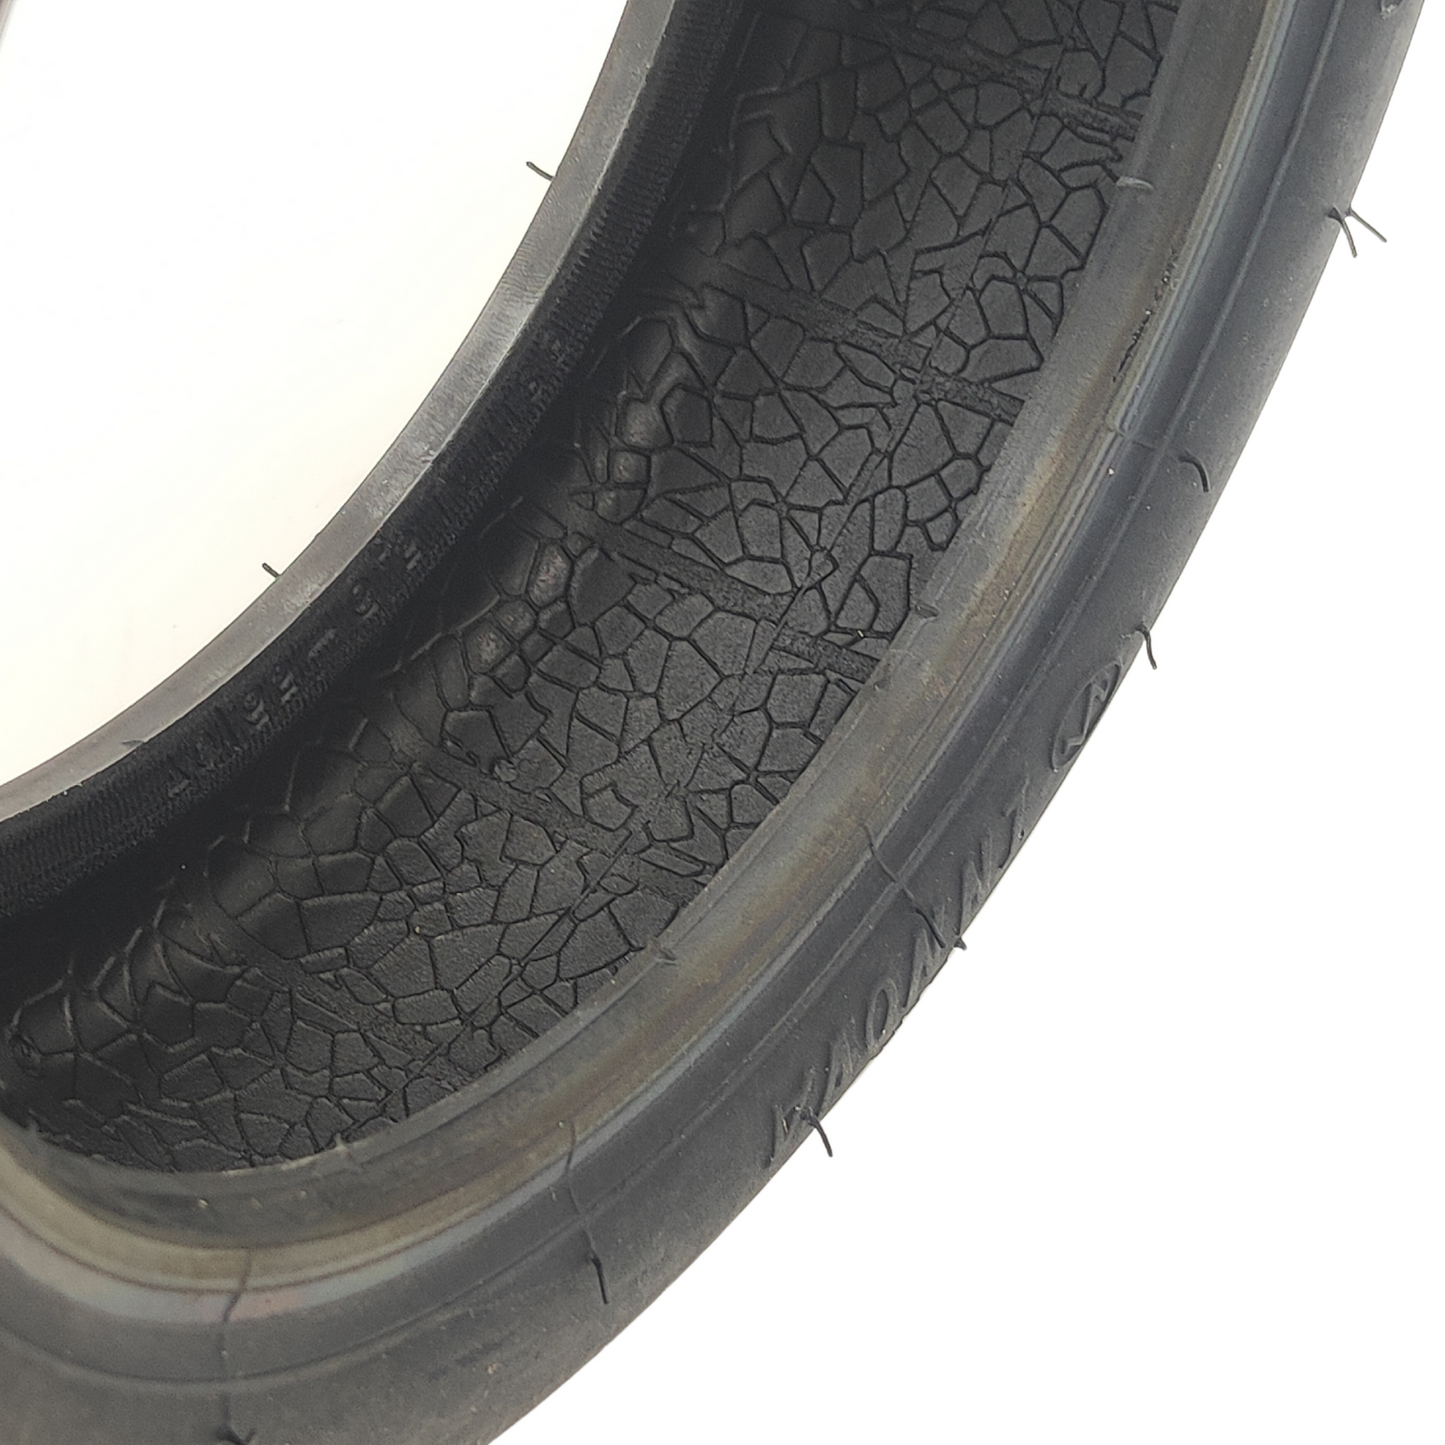 70/65-6.5 Tubeless Reifen ohne Gelschicht 255x70 für E-Scooter